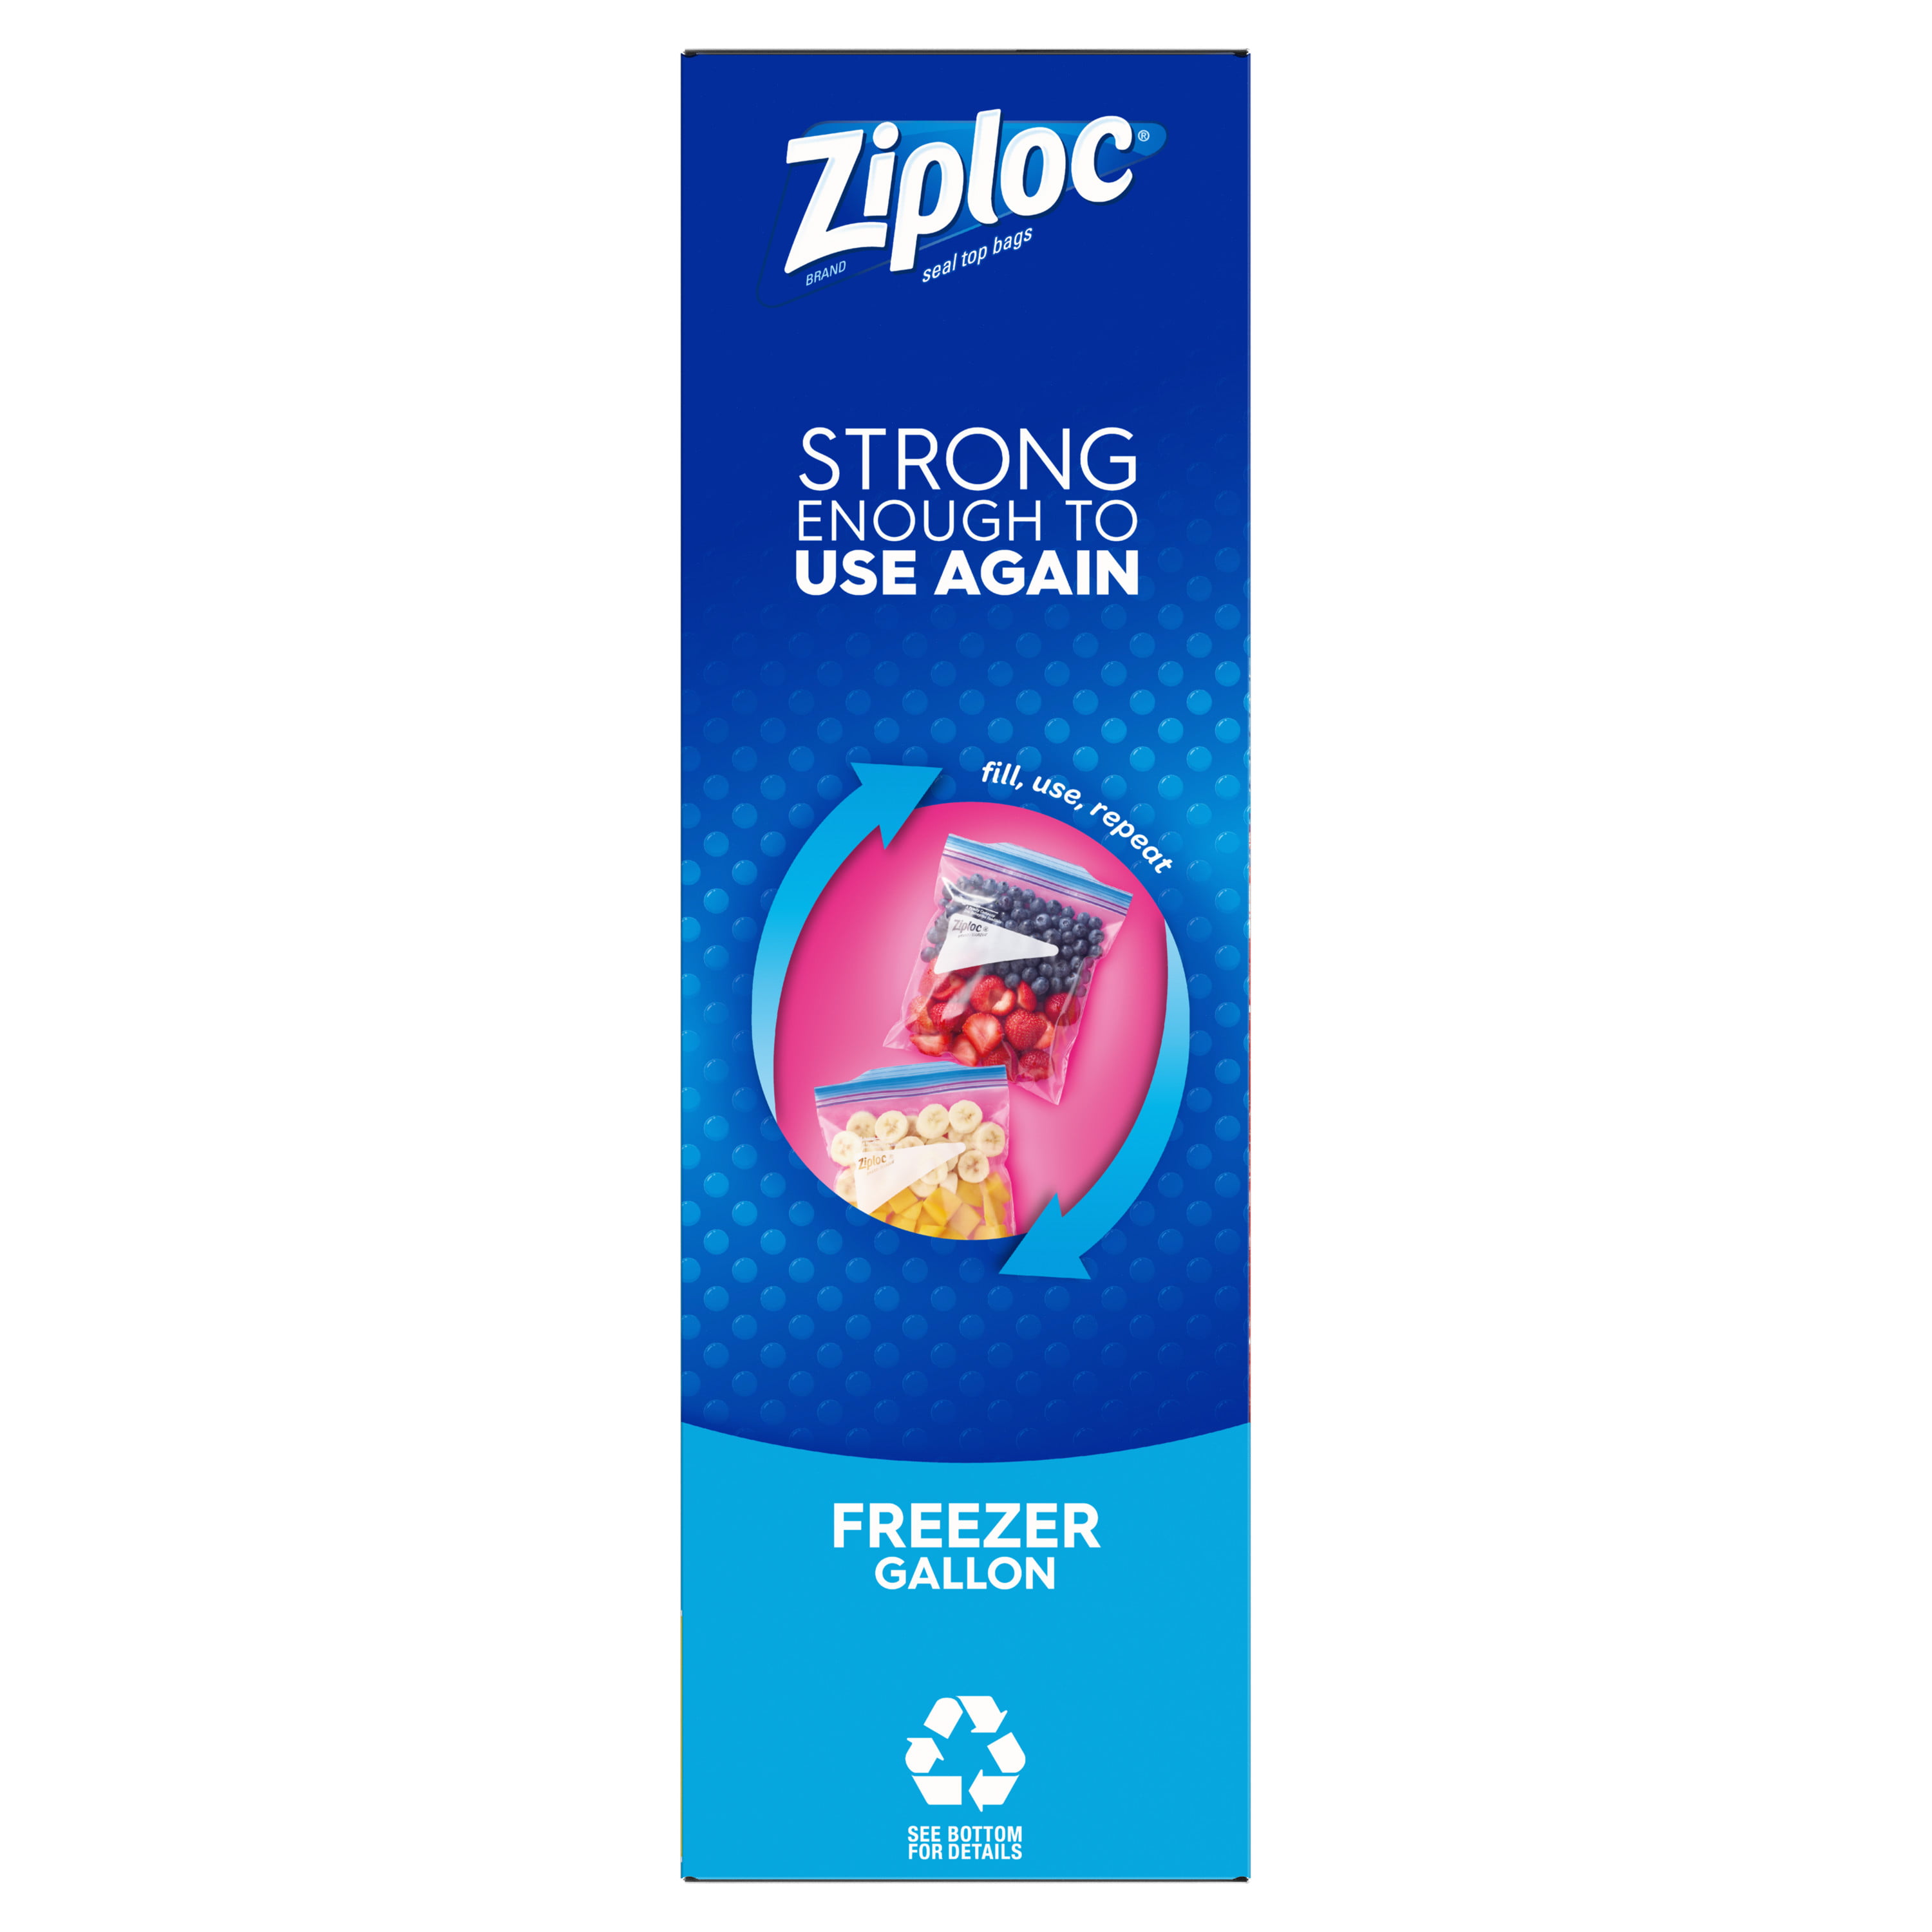 Double Zipper Freezer Bags by Ziploc® SJN682258